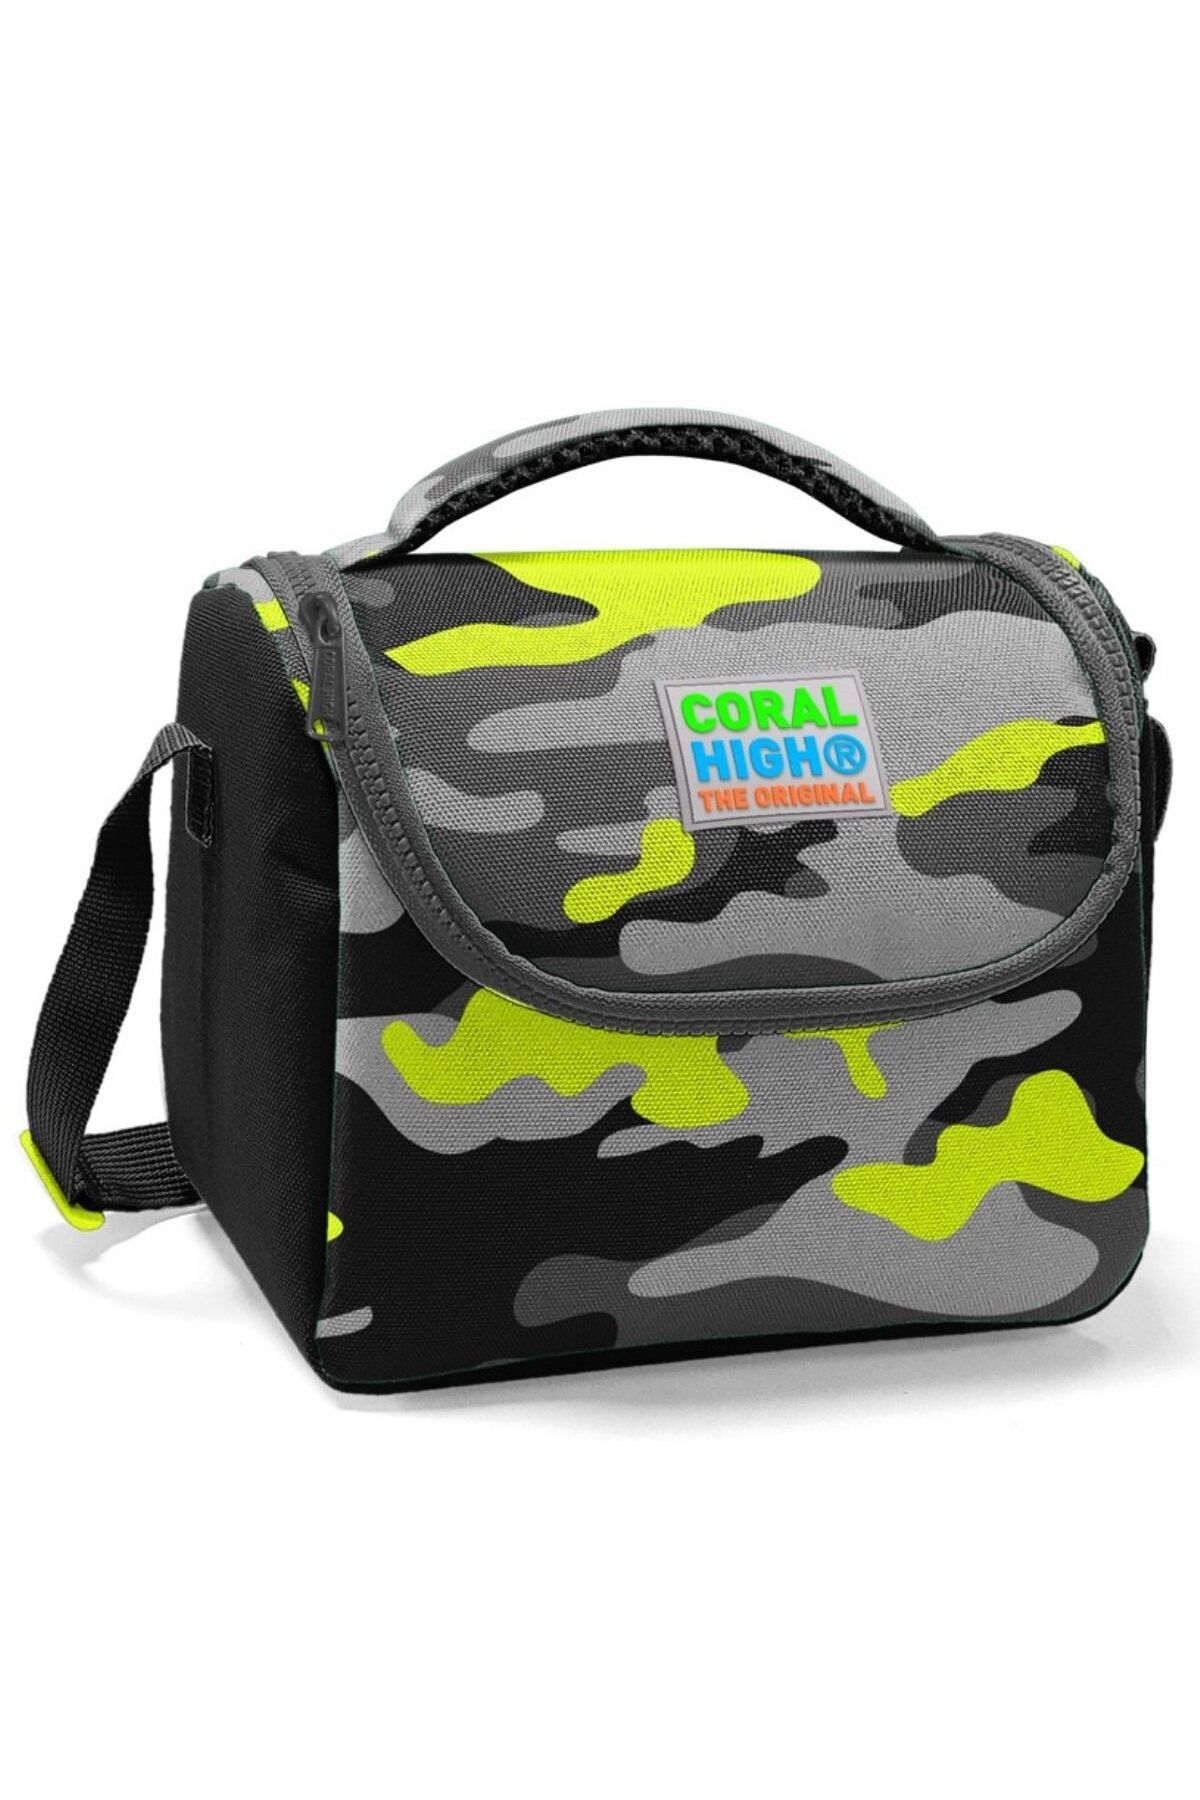 Coral High Erkek Çocuk Siyah Yeşil Kamuflaj Okul Beslenme Çantası - Yalıtımlı Piknik Çantası